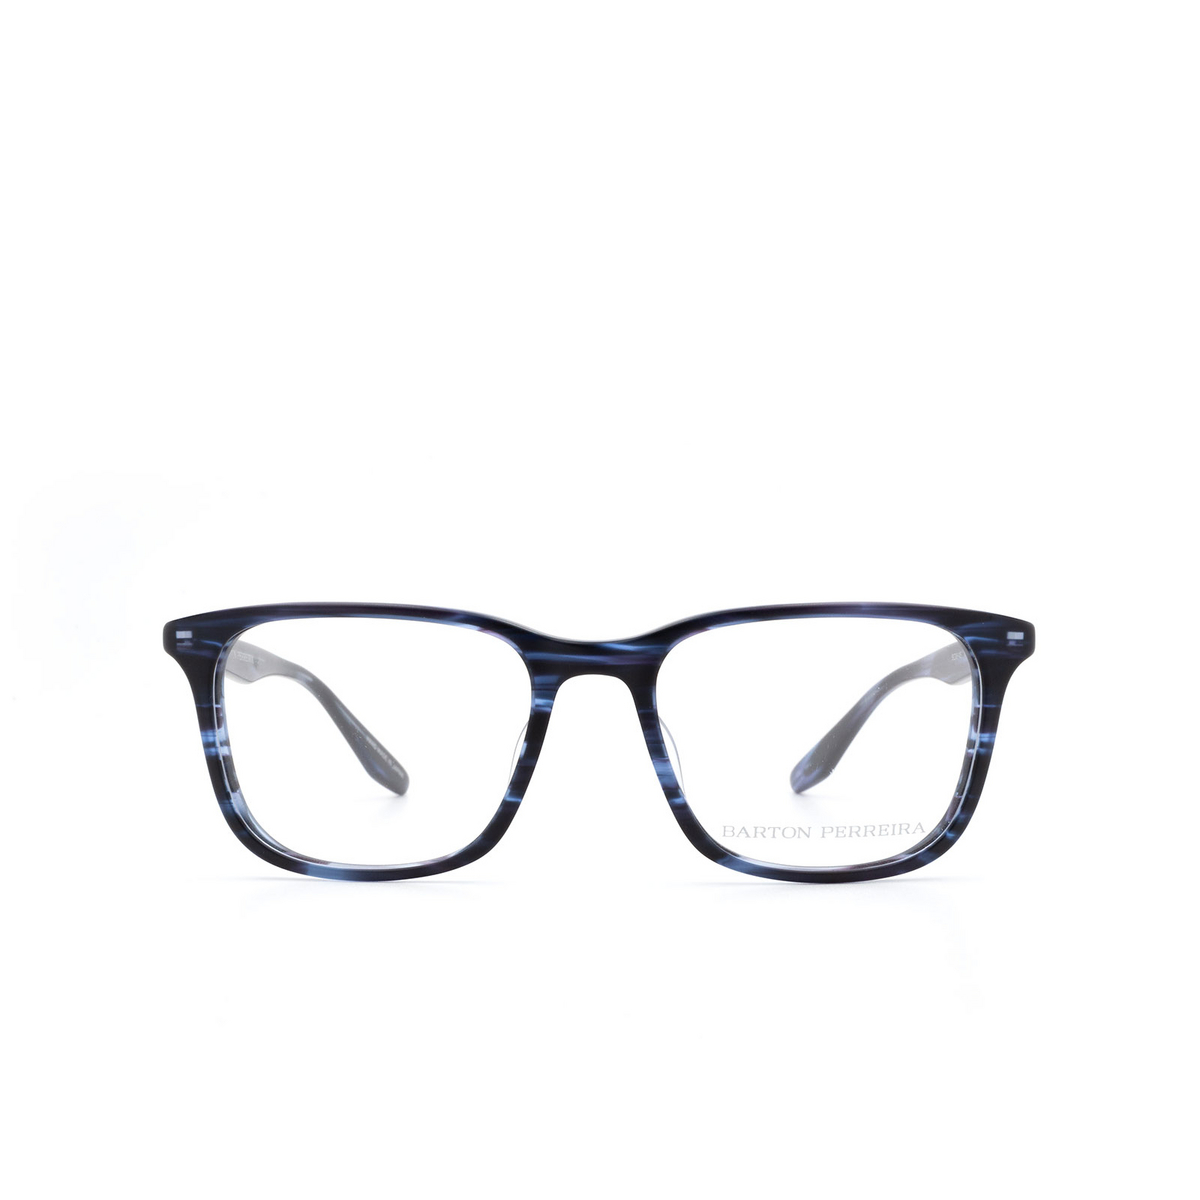 Barton Perreira KENTON Eyeglasses MMI - front view